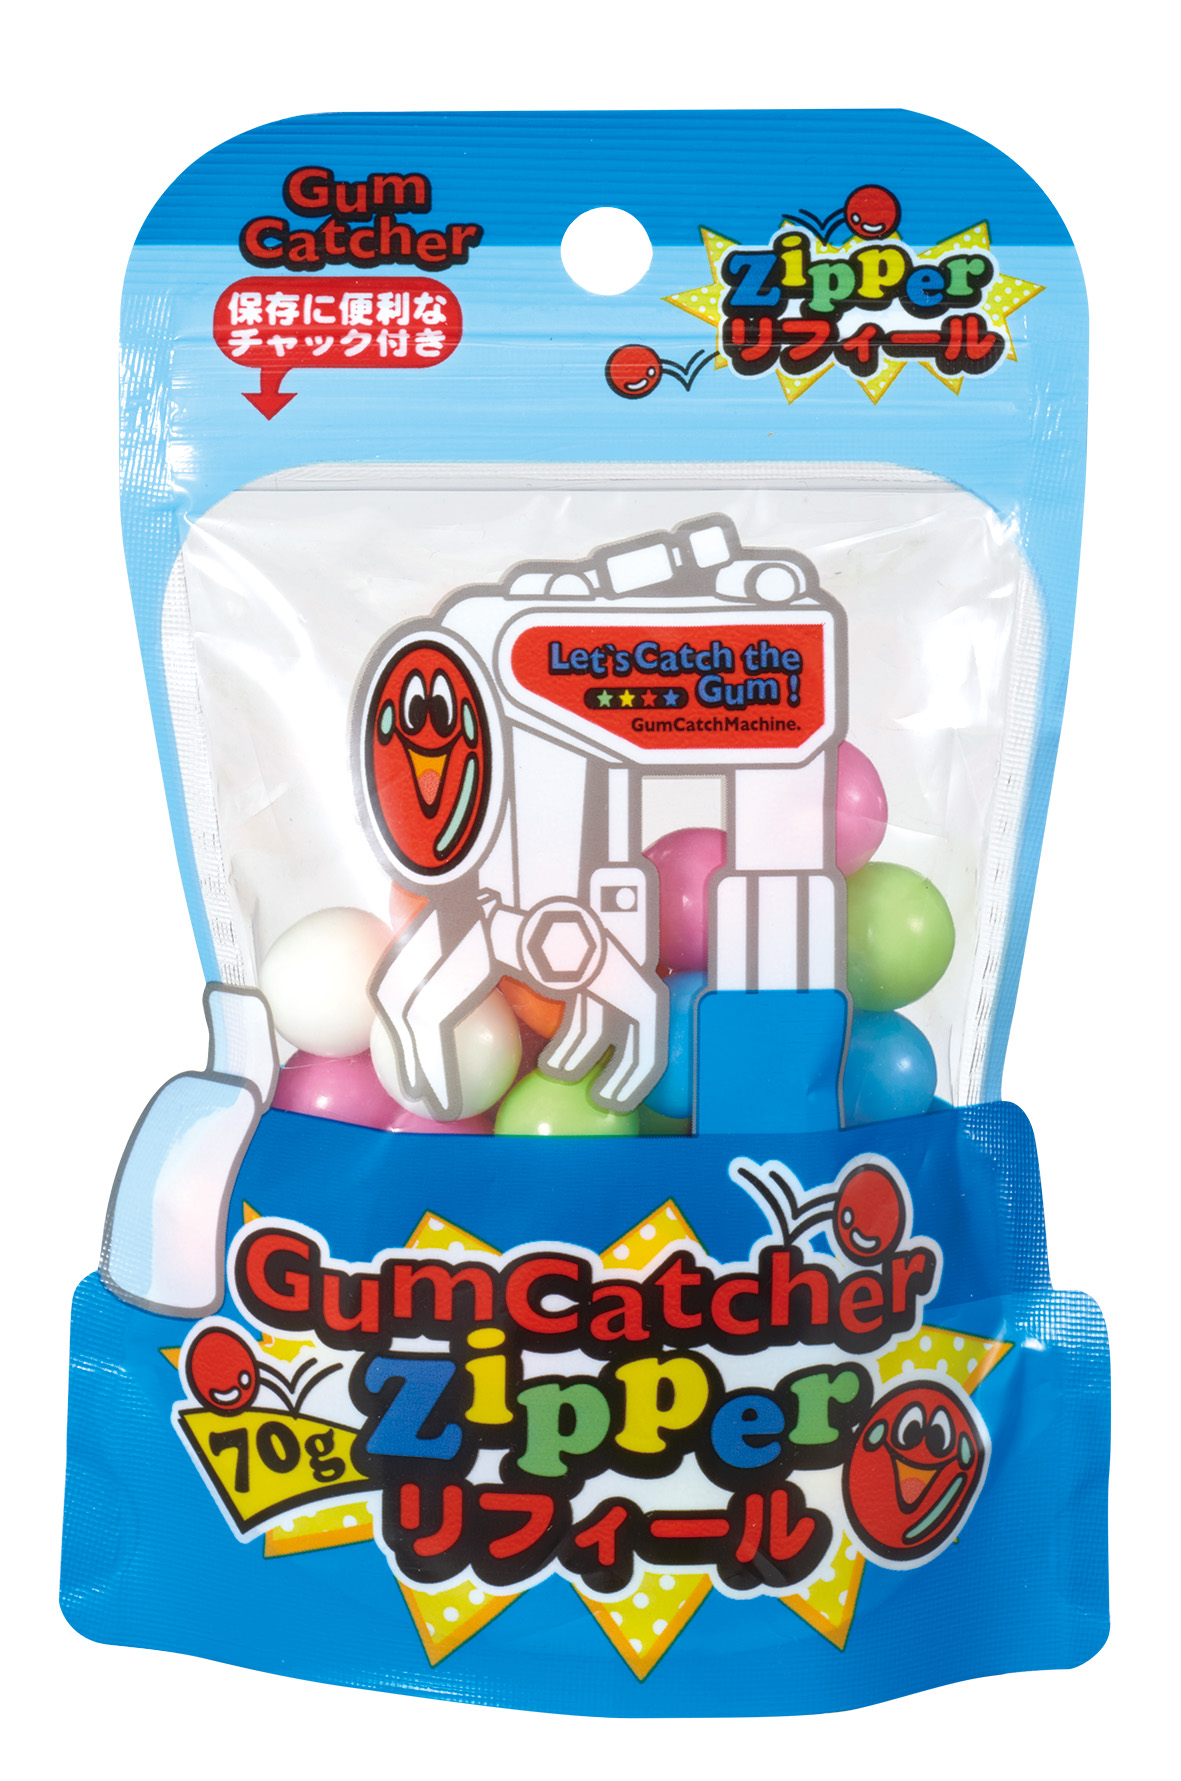 Toy x Candy Combi - Gum Catcher Zipper Refill